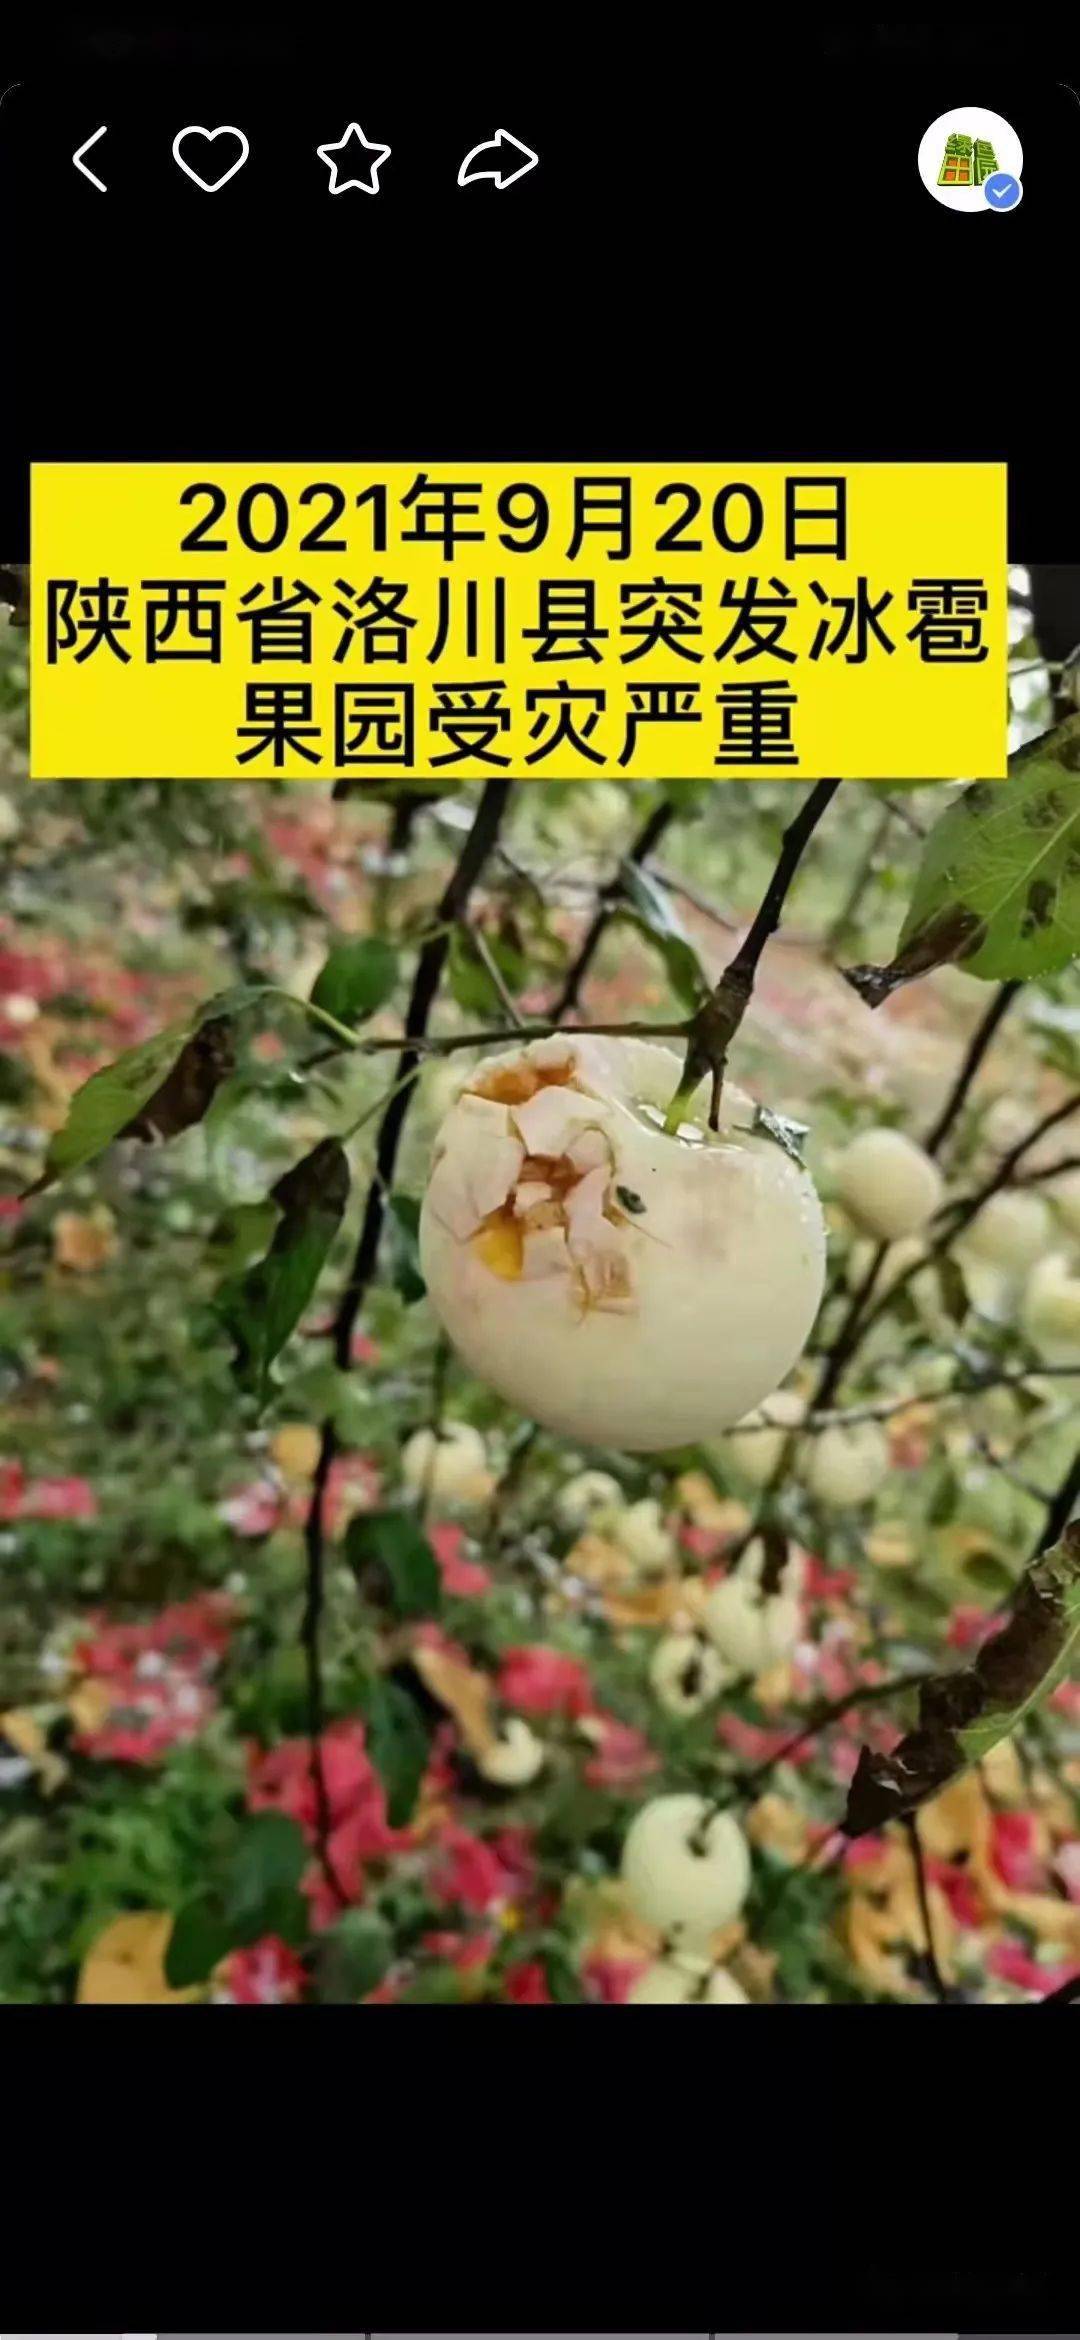 冰雹灾害频发陕西洛川富县等地也遭遇冰雹袭击正摘袋的果园损失惨重